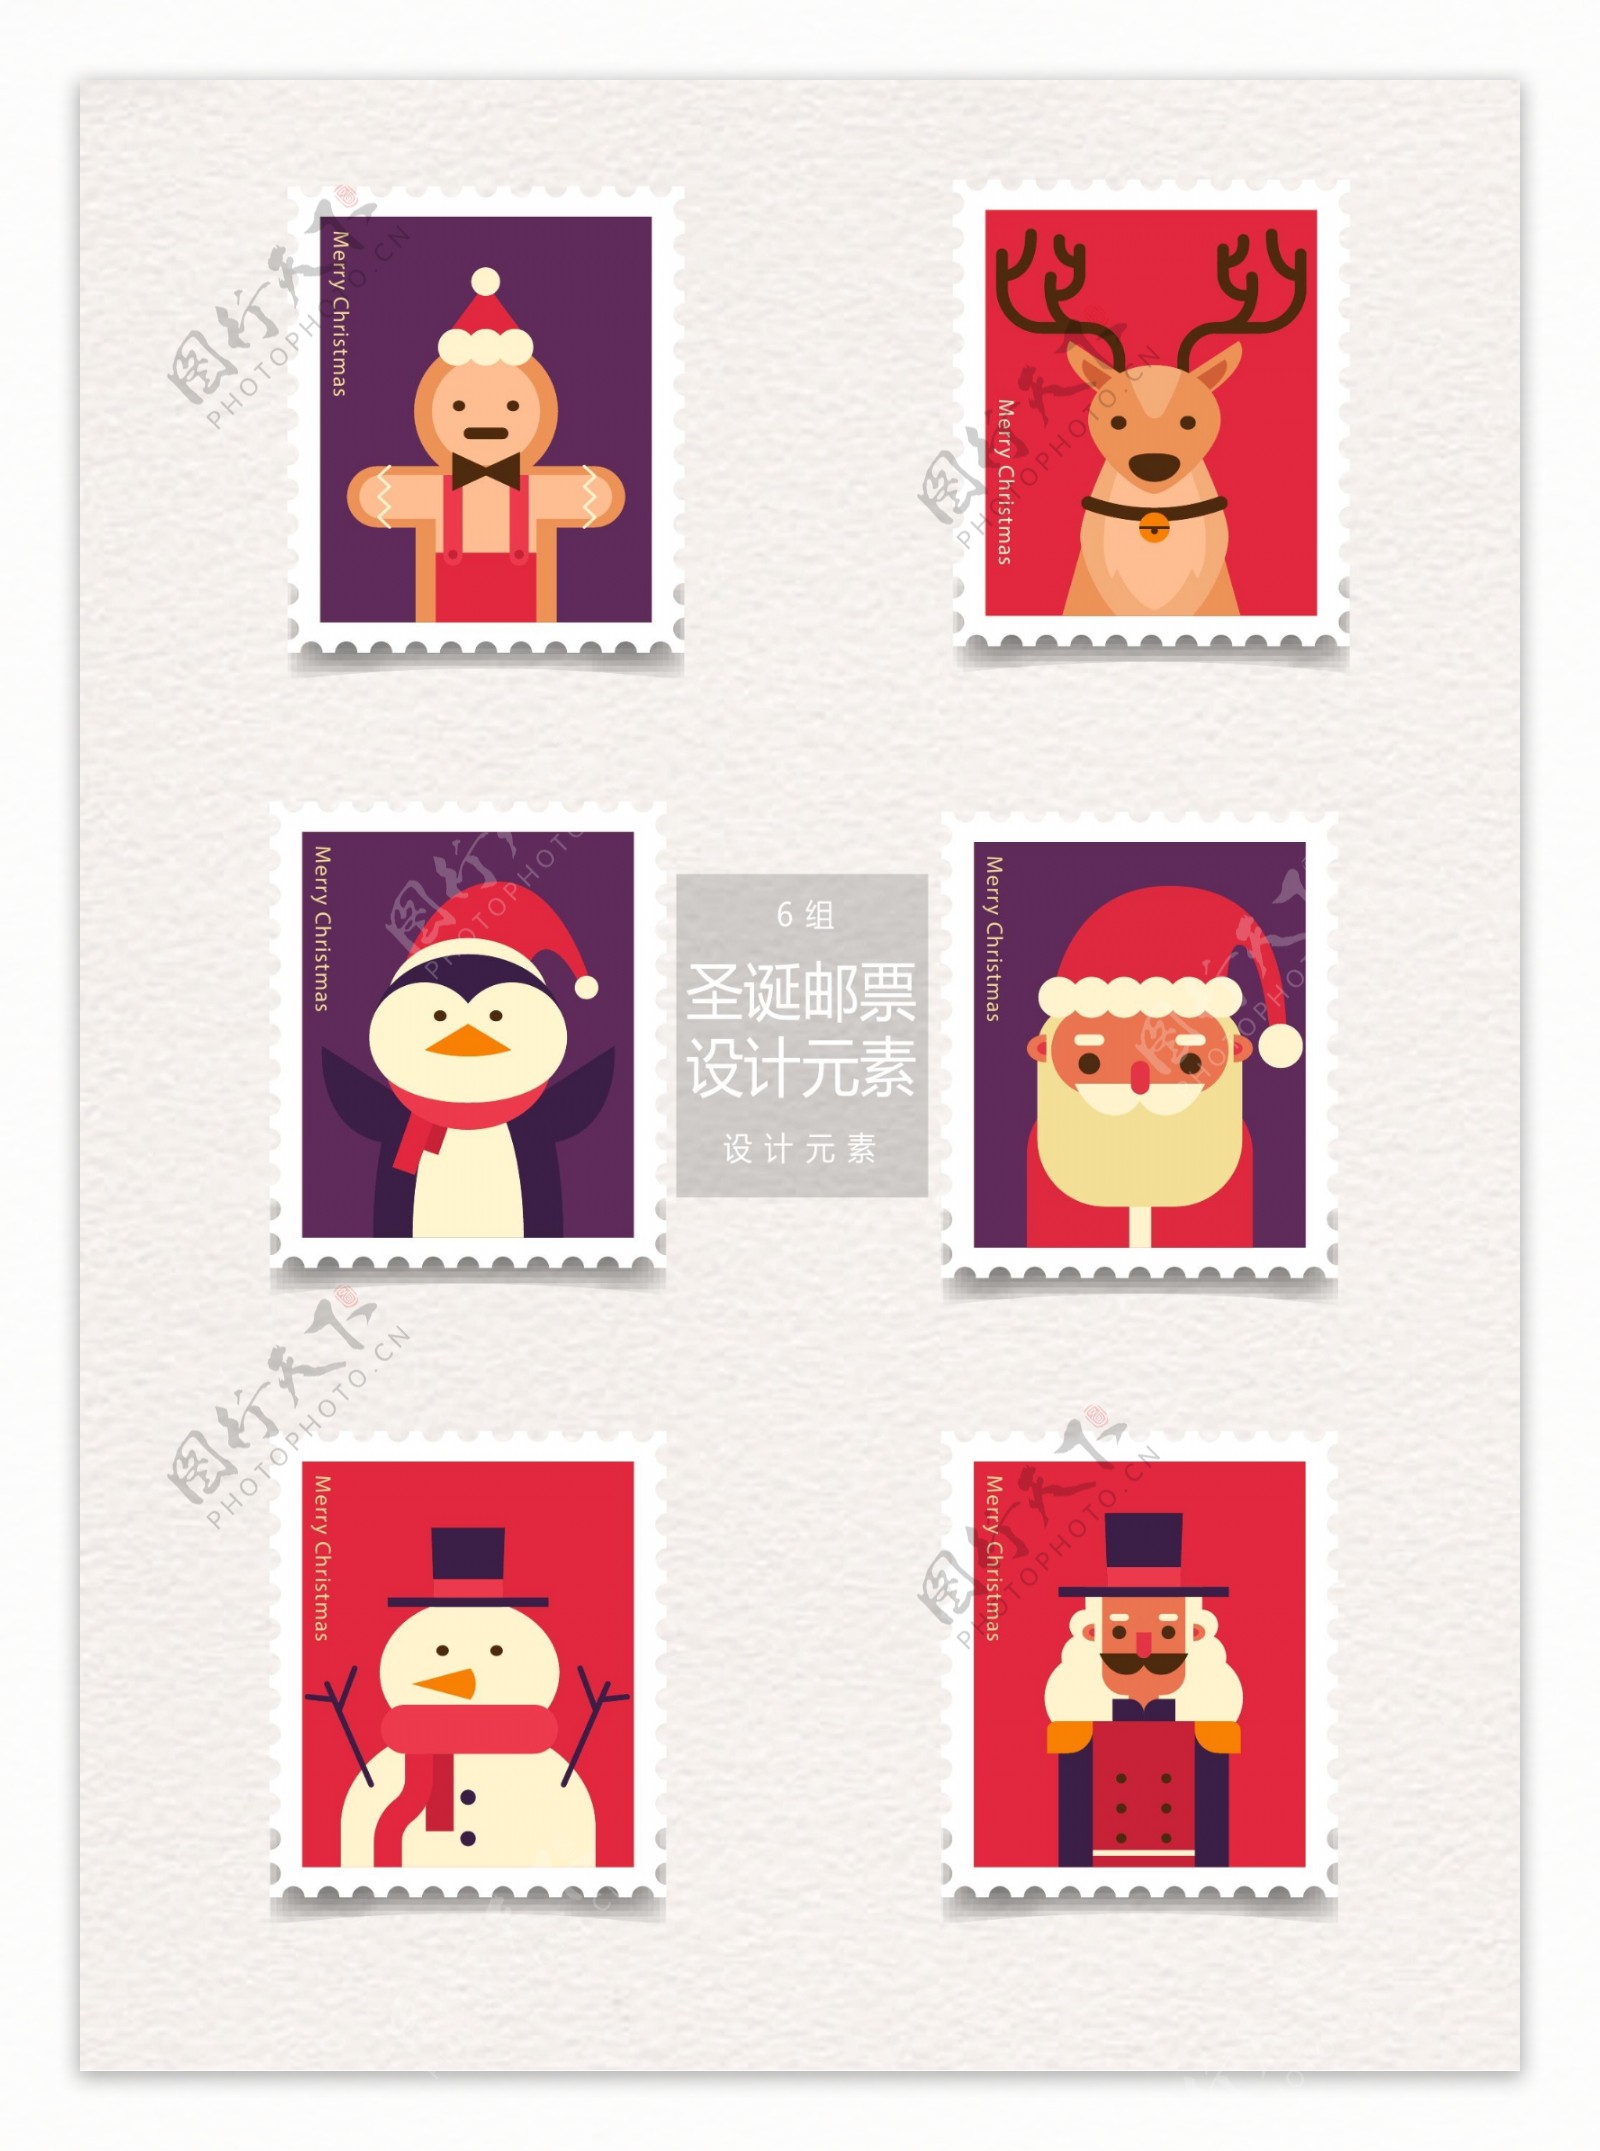 卡通圣诞邮票设计元素